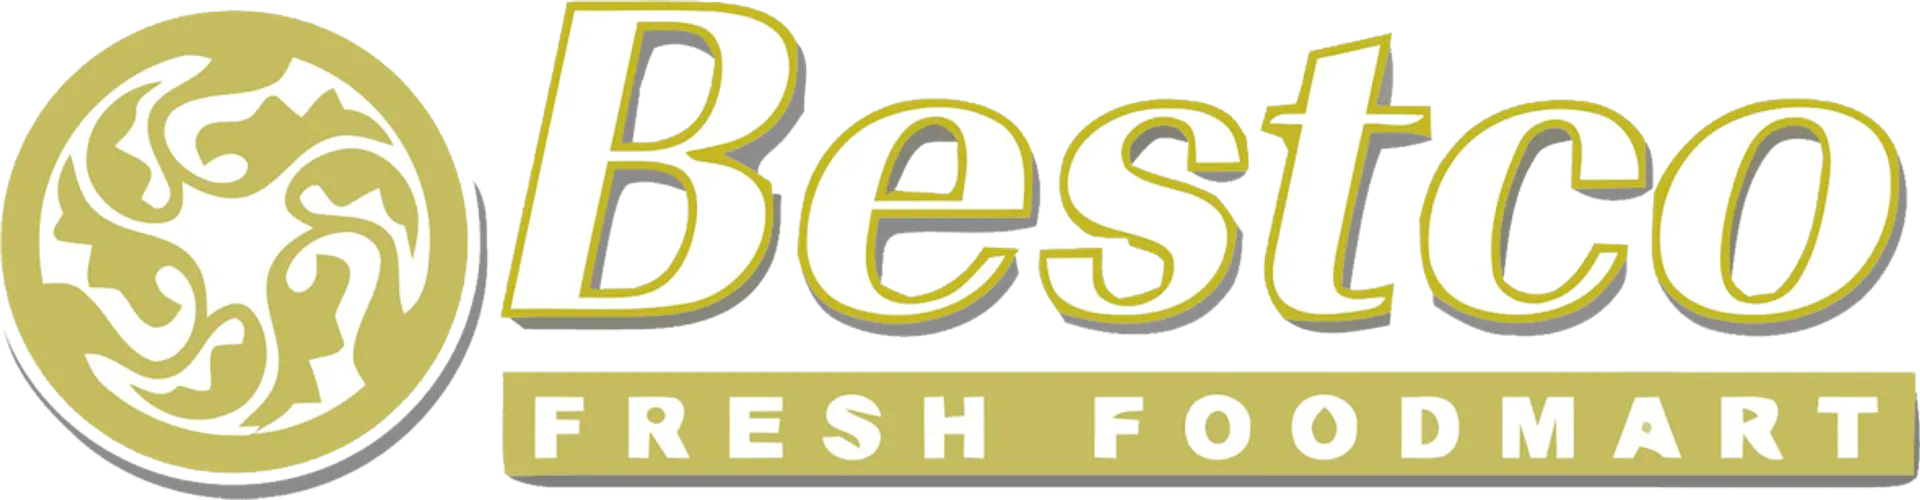 BESTCO FOODMART logo of current flyer